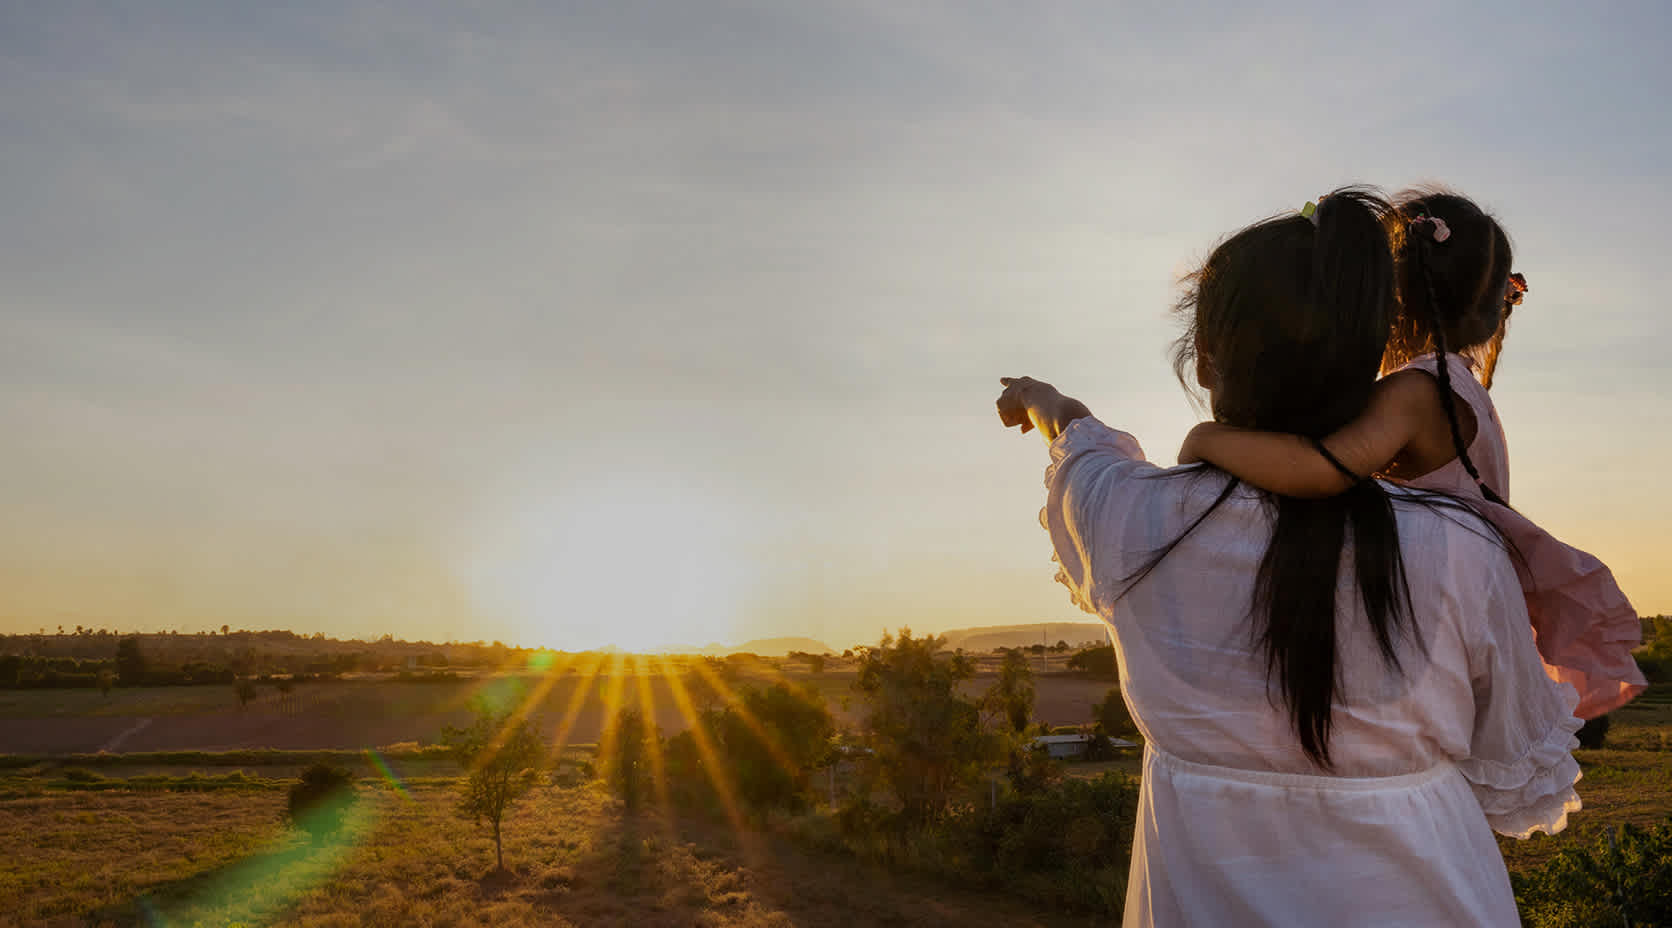 Frau mit Kind im Arm zeigt und blickt in Richtung aufgehende Sonne